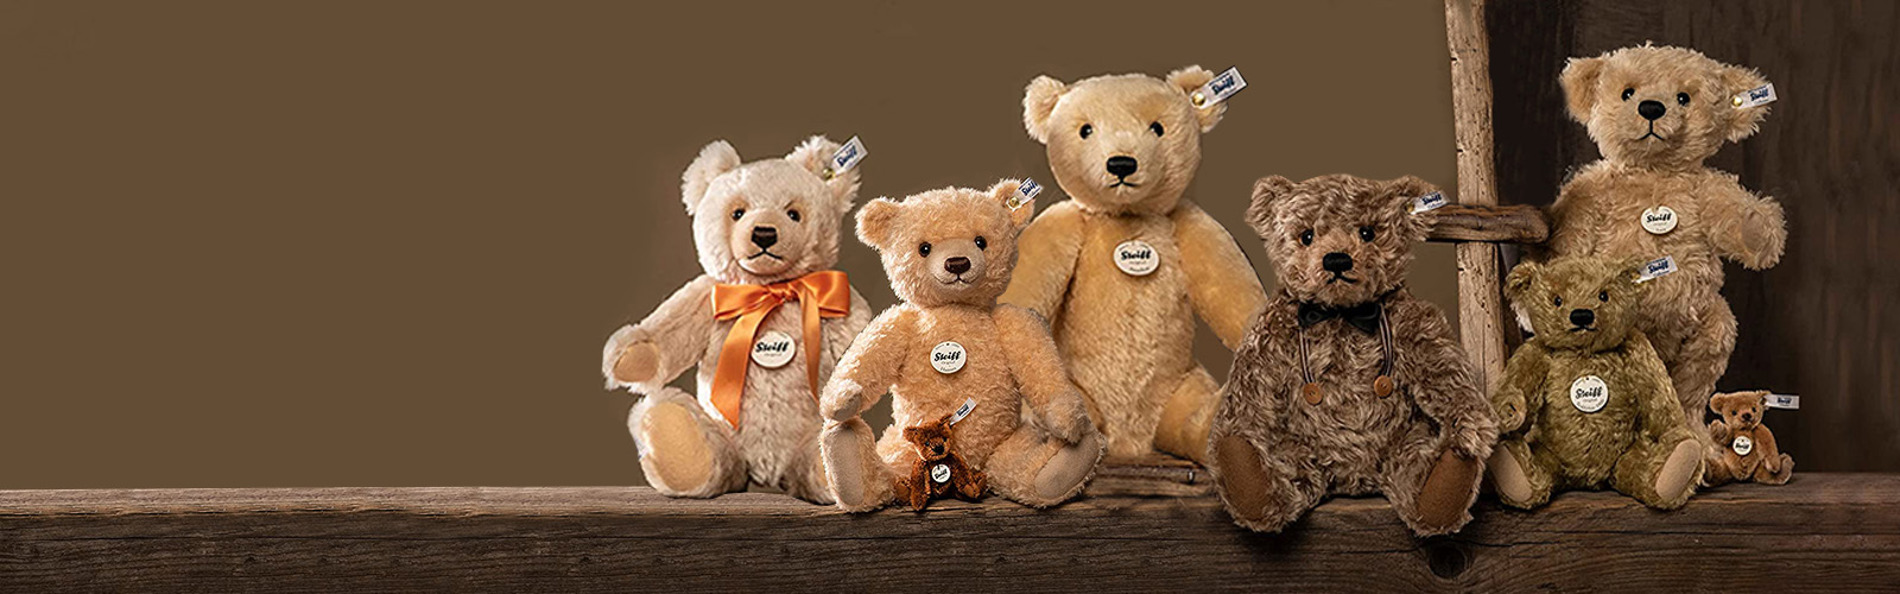 Steiff Teddy Bears